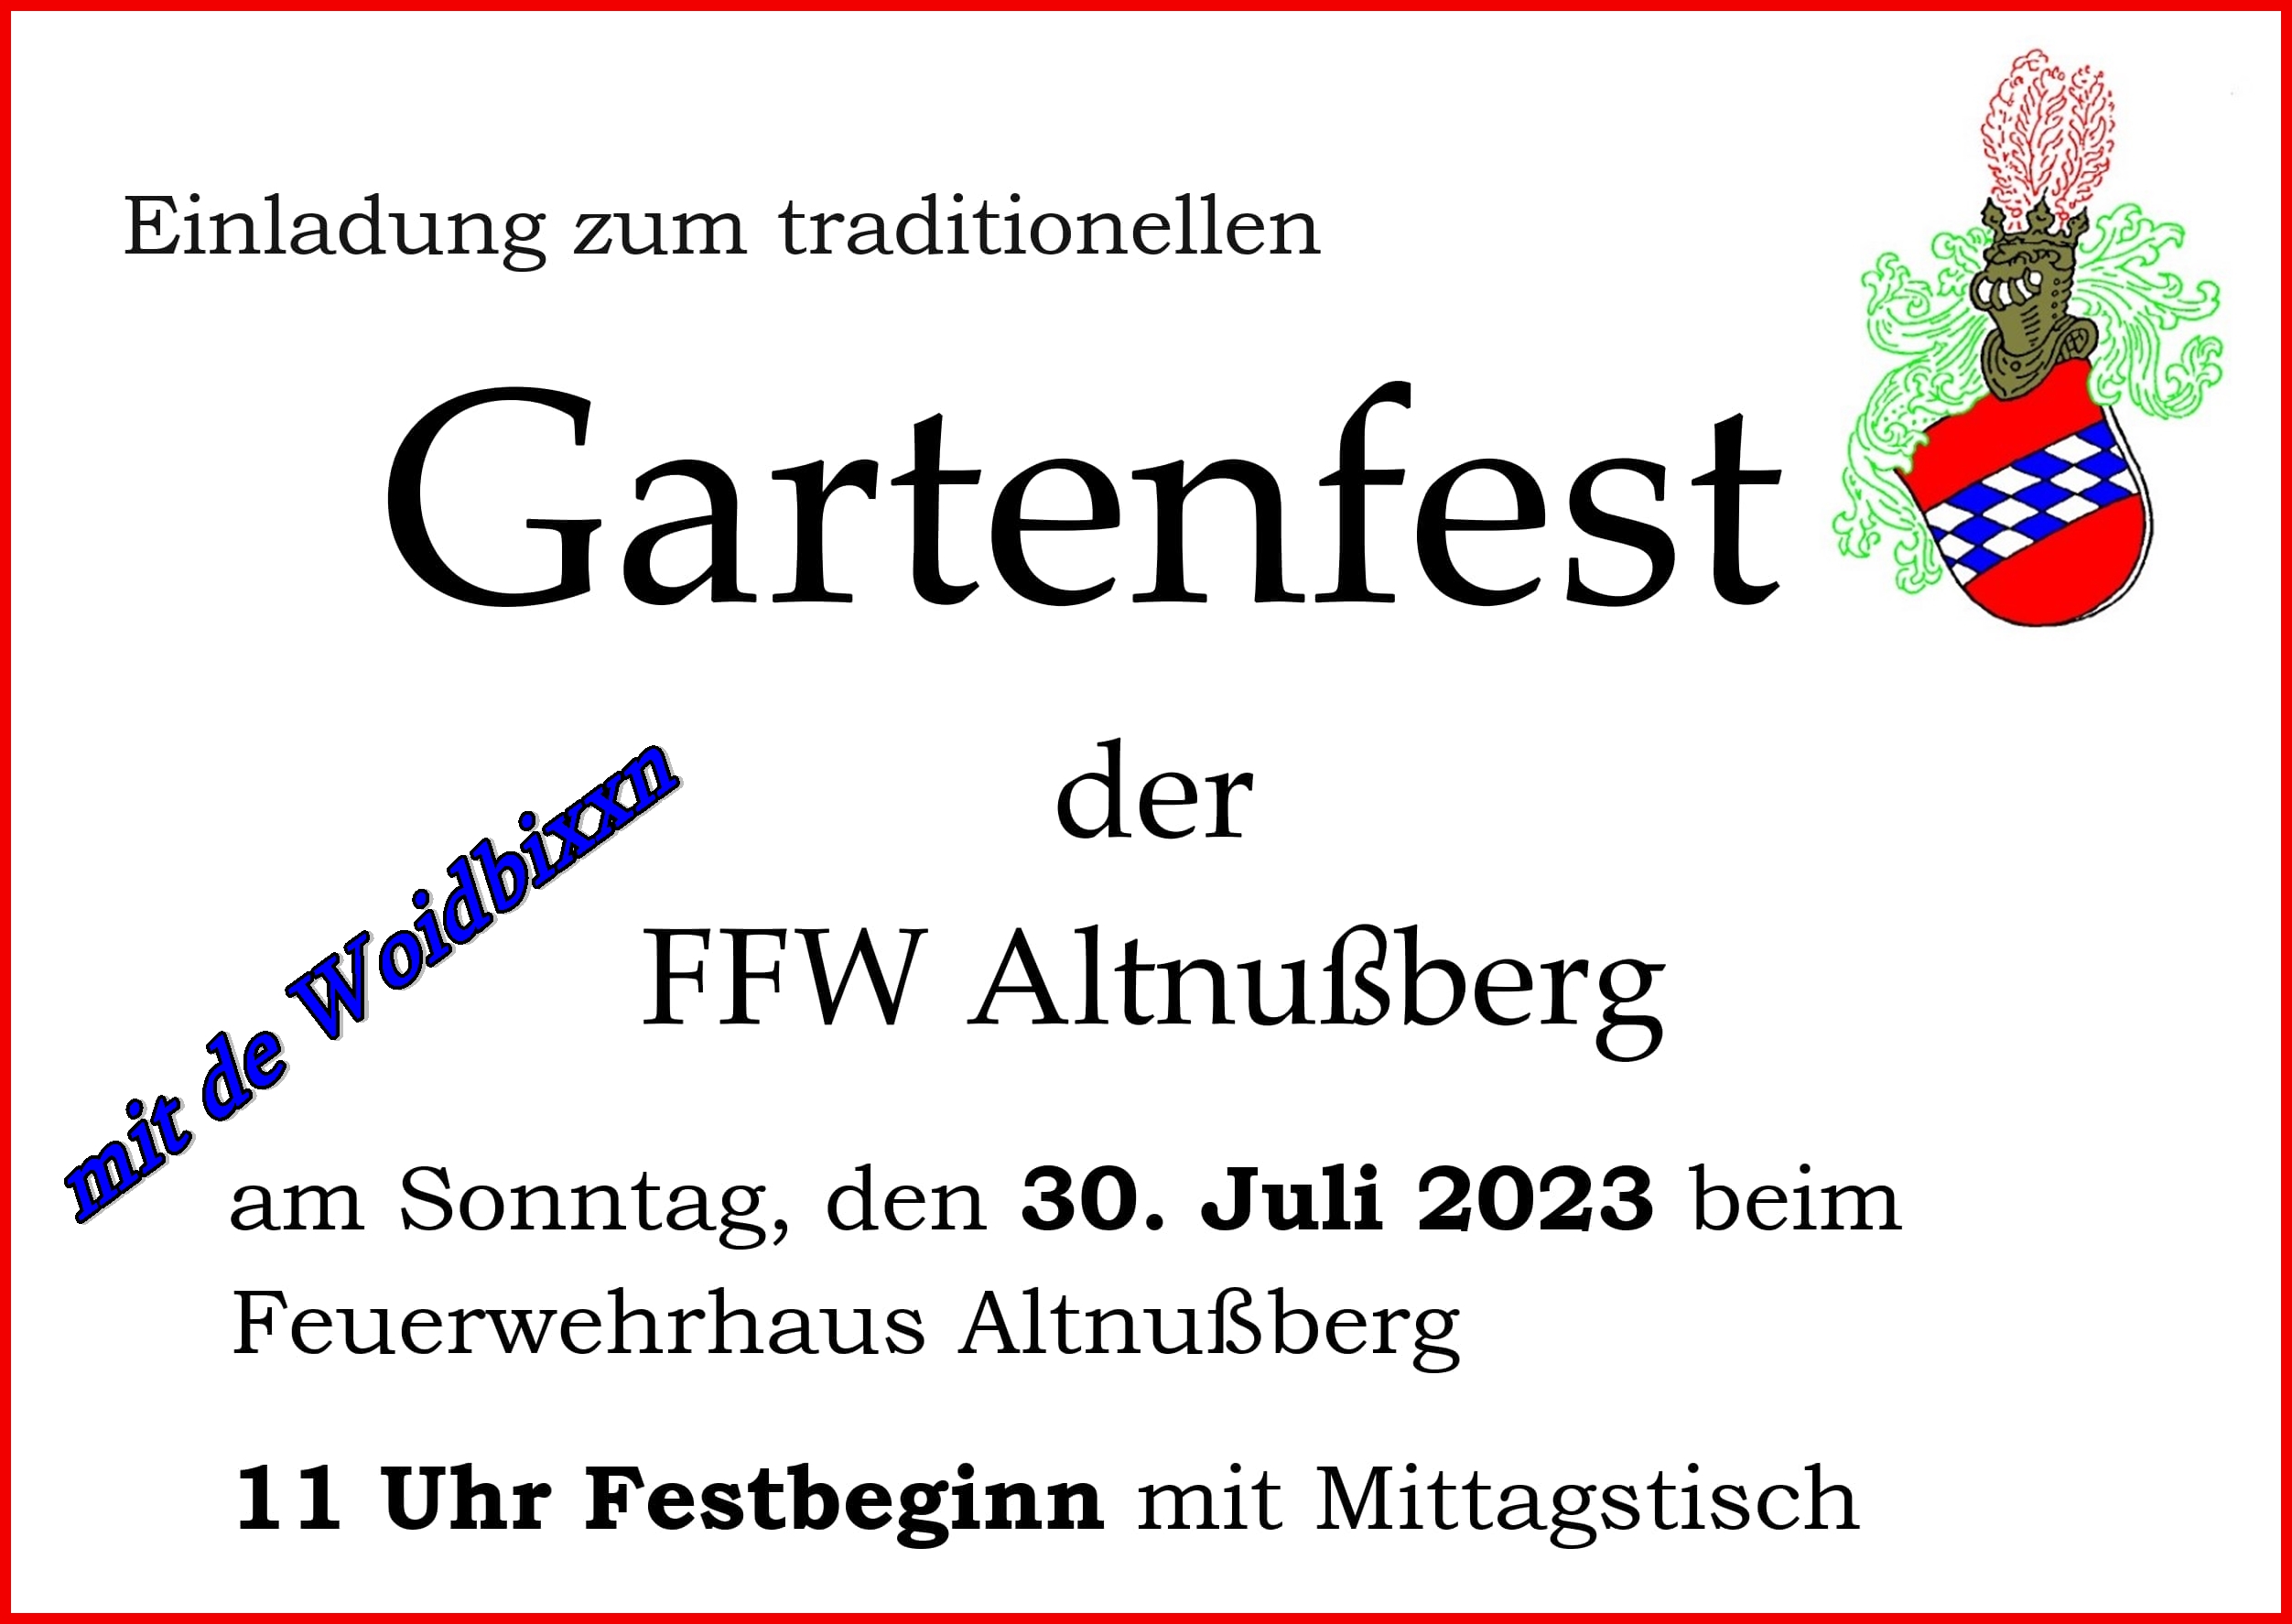 Einladum zum traditionellen Gartenfest der FFW Altnußberg am Sonntag, den 20. Juli 2023